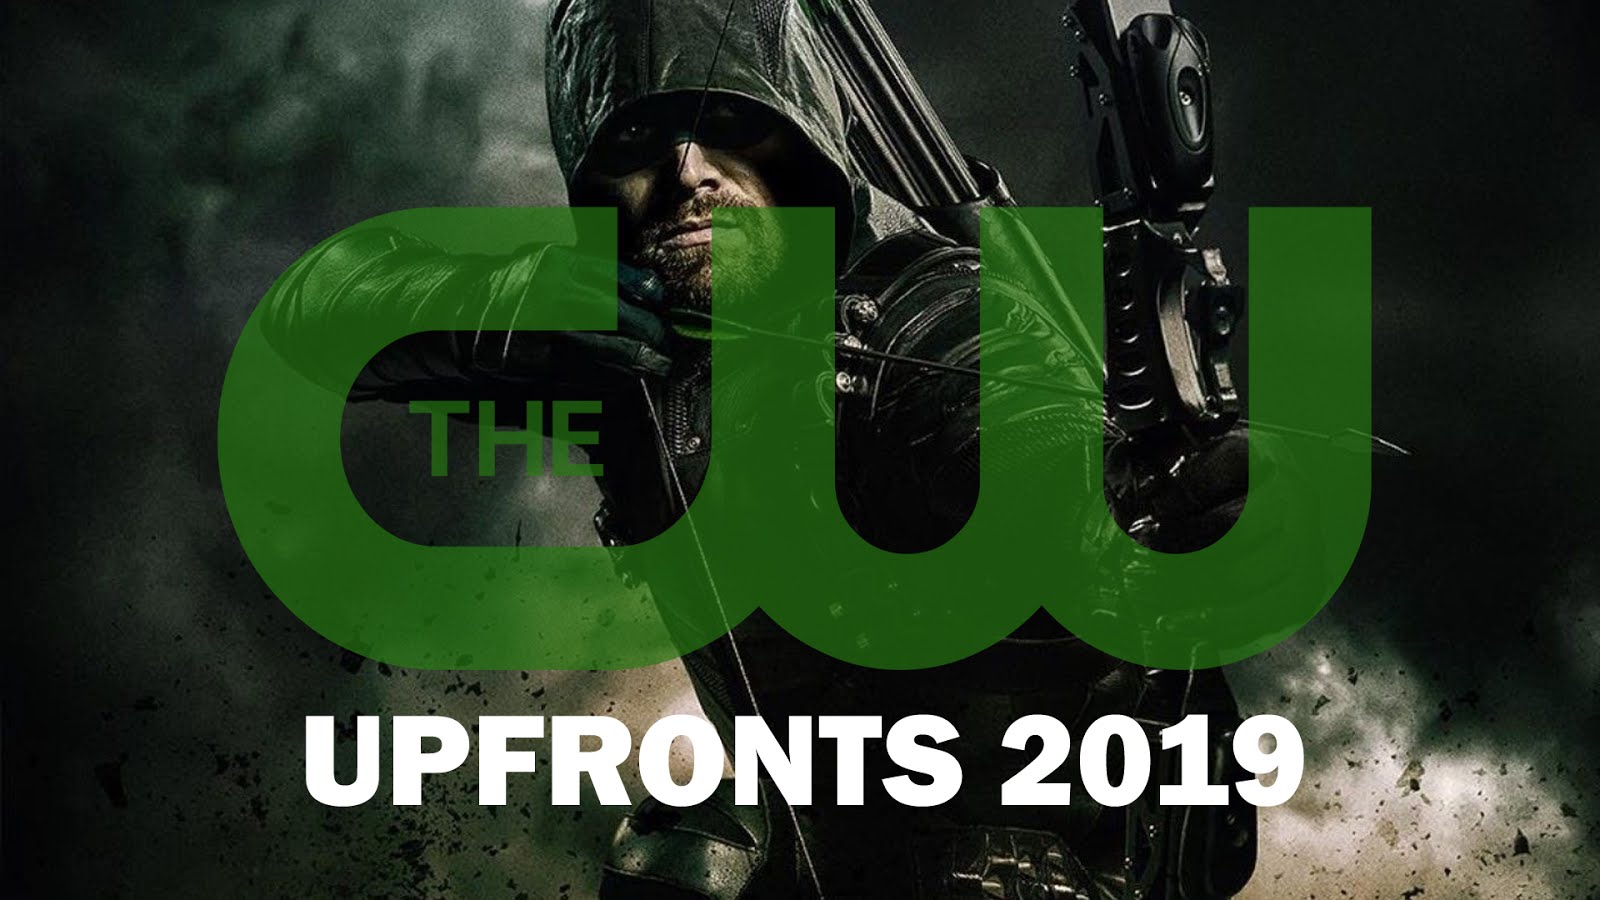 Upfronts 2019 de The CW con todos los estrenos, renovaciones y cancelaciones